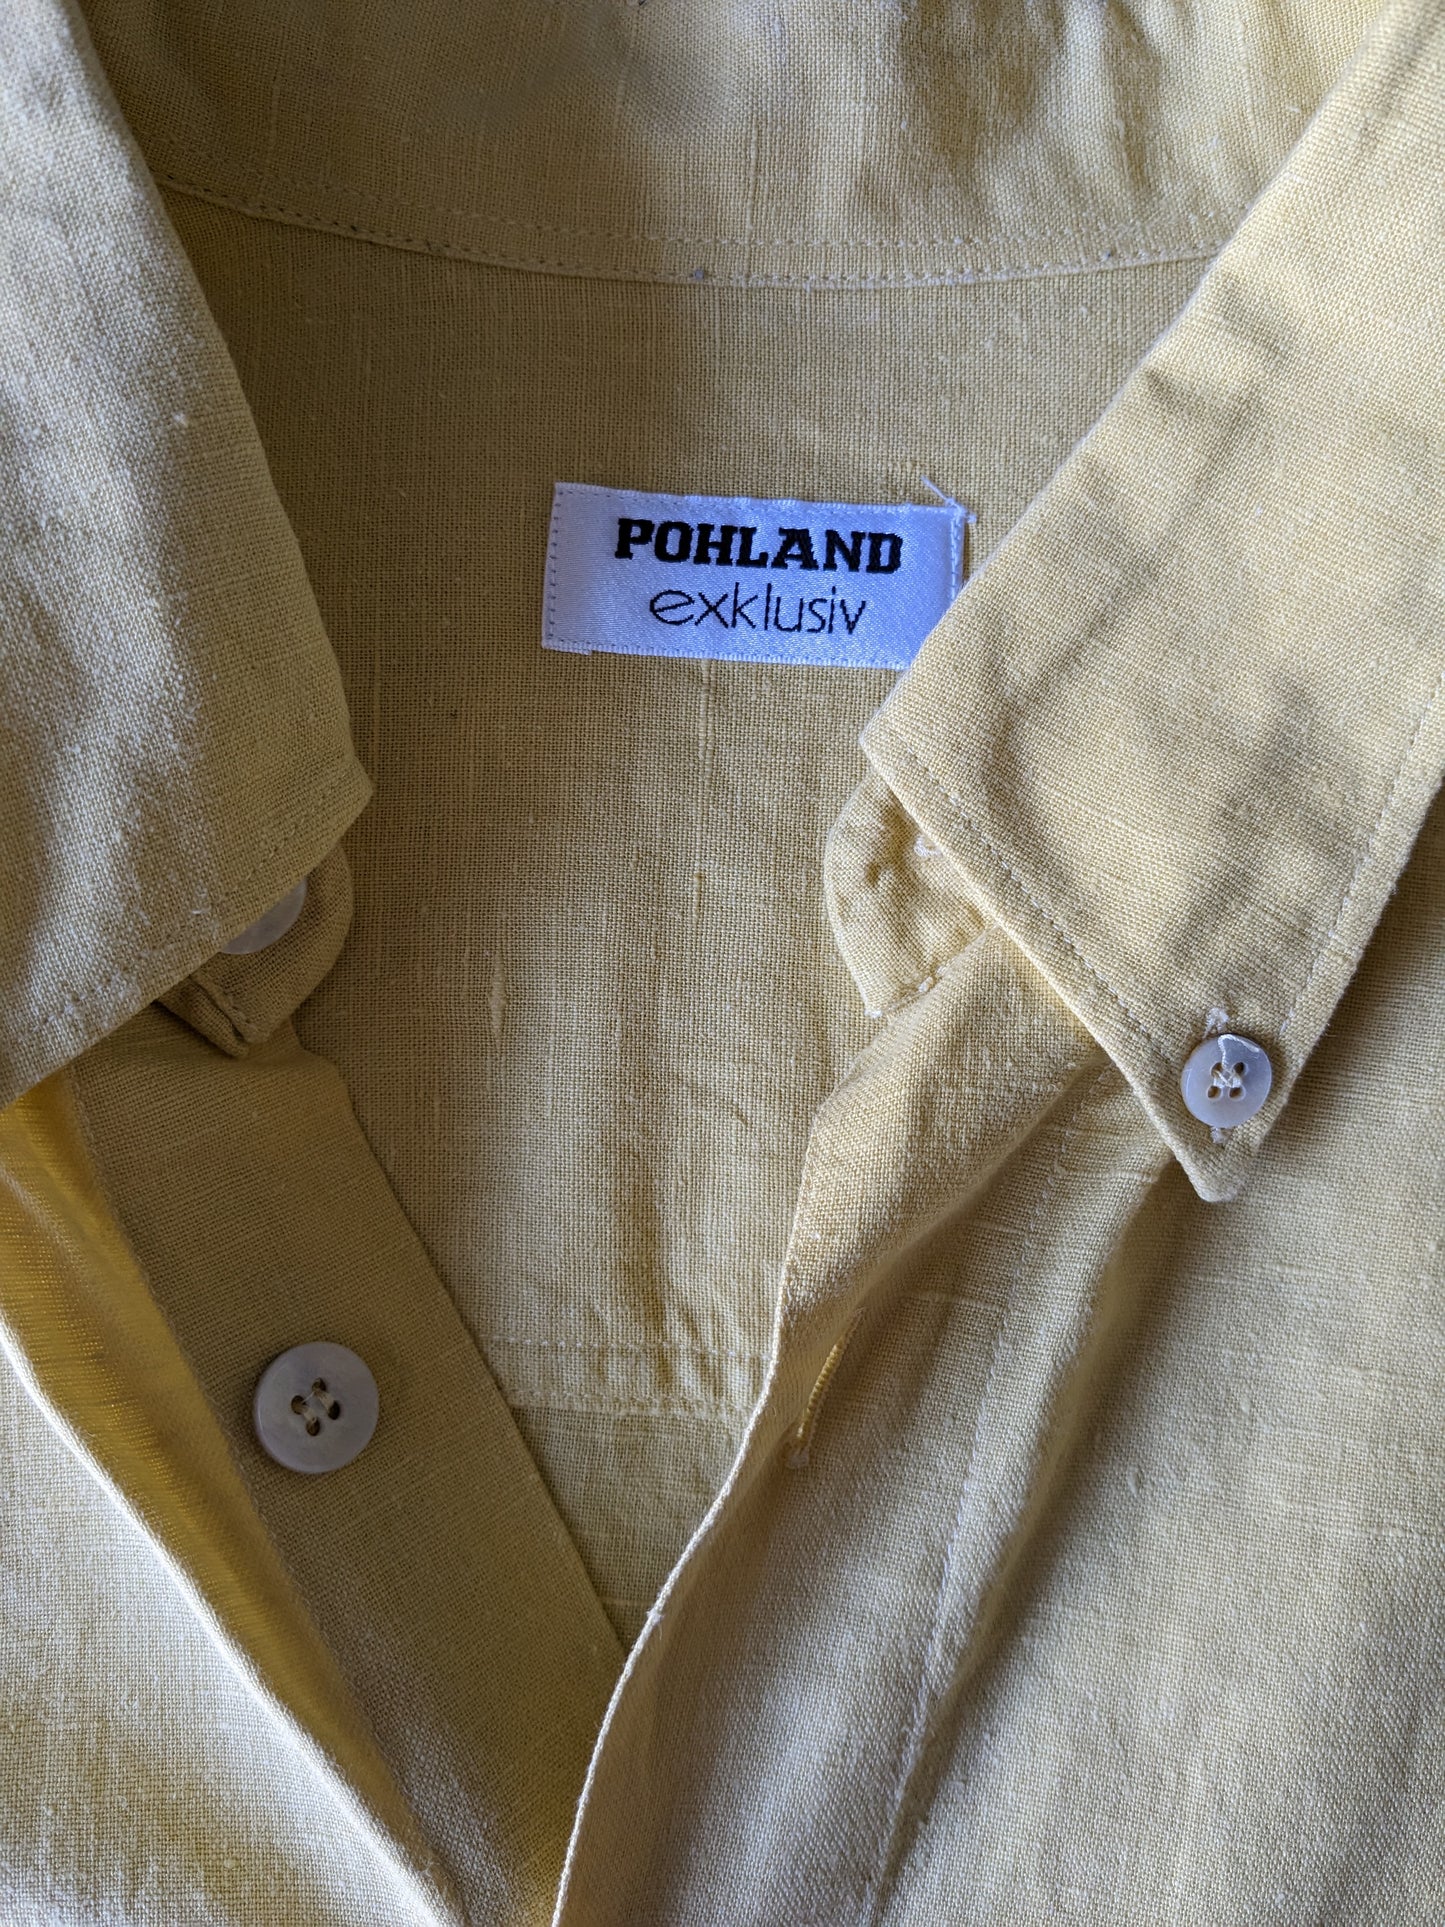 Vintage Pohland Exklusiv Linnen overhemd met groter knopen. Geel gekleurd. Maat 2XL / XXL.